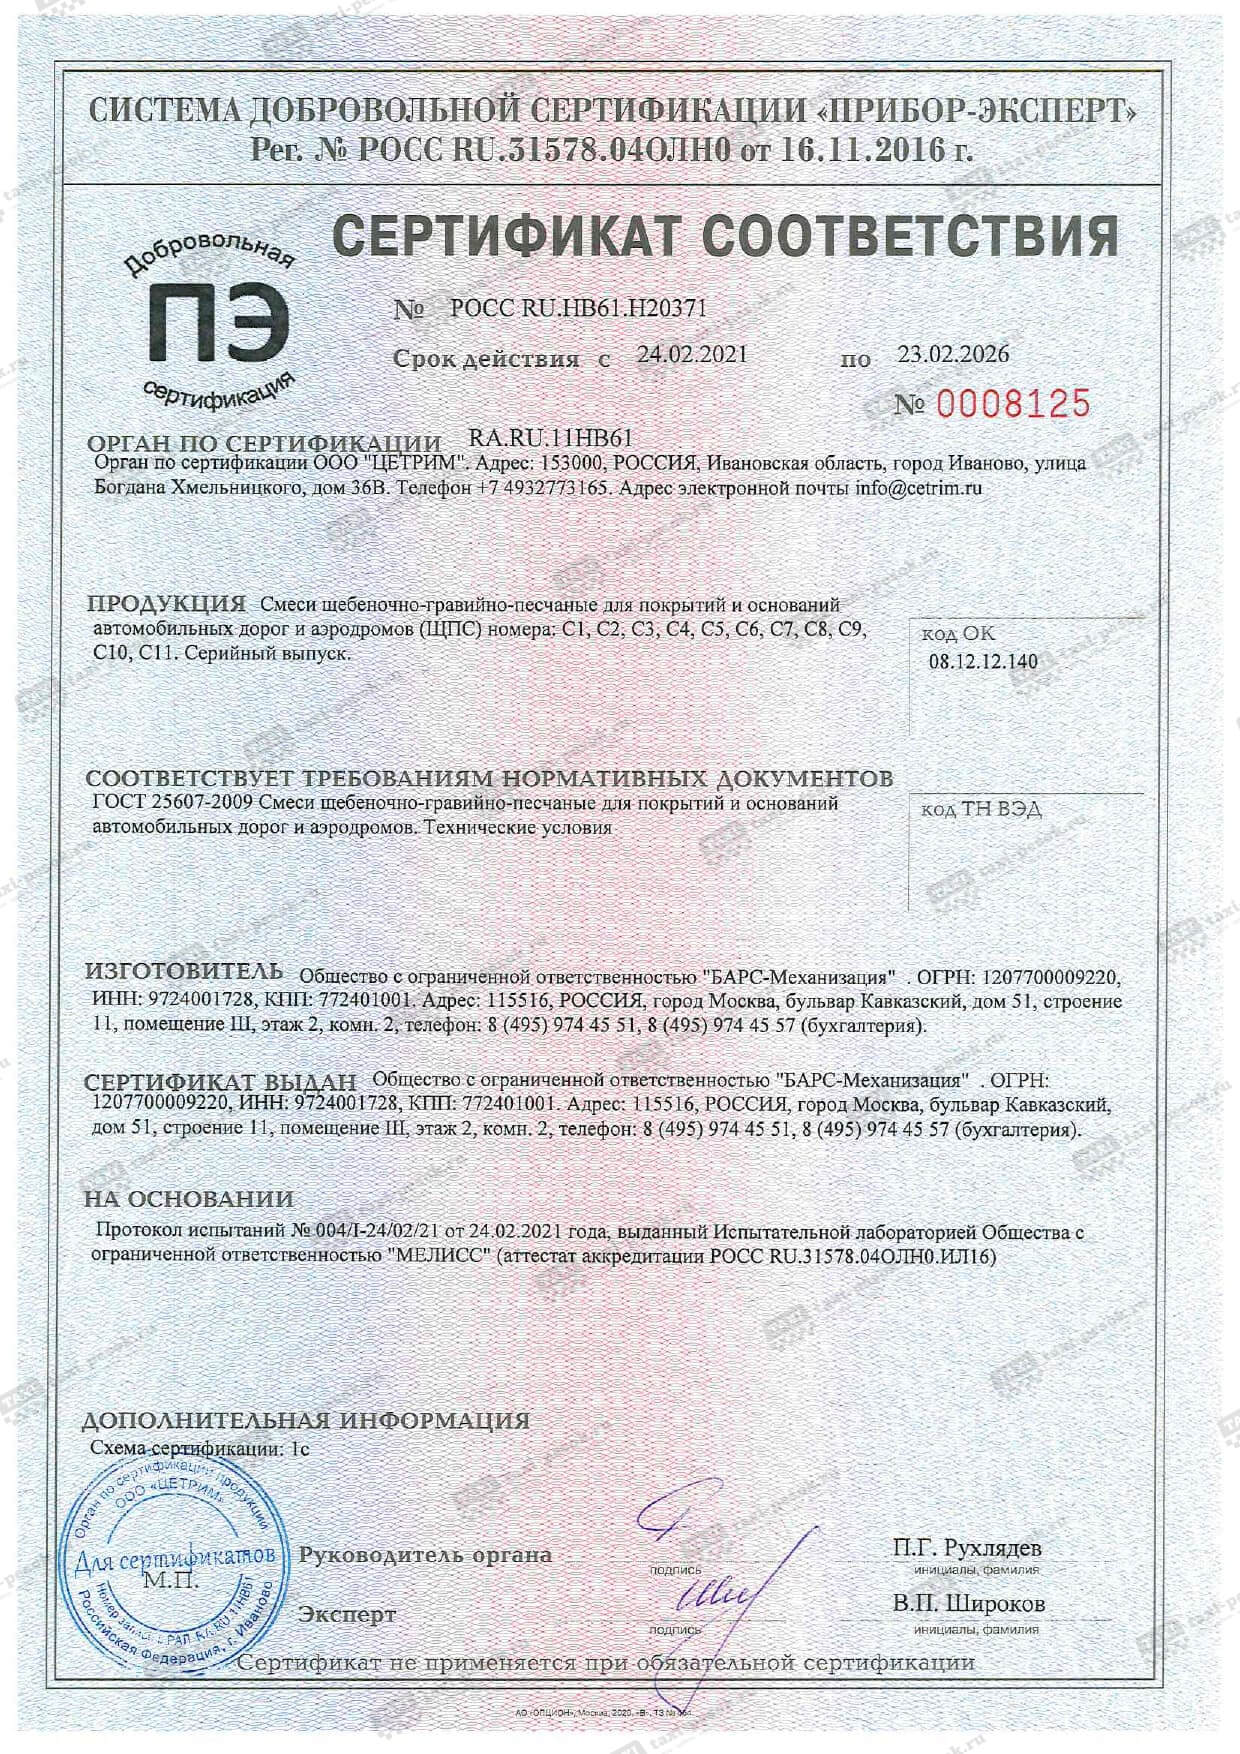 Сертификат соответствия с вотермаркой